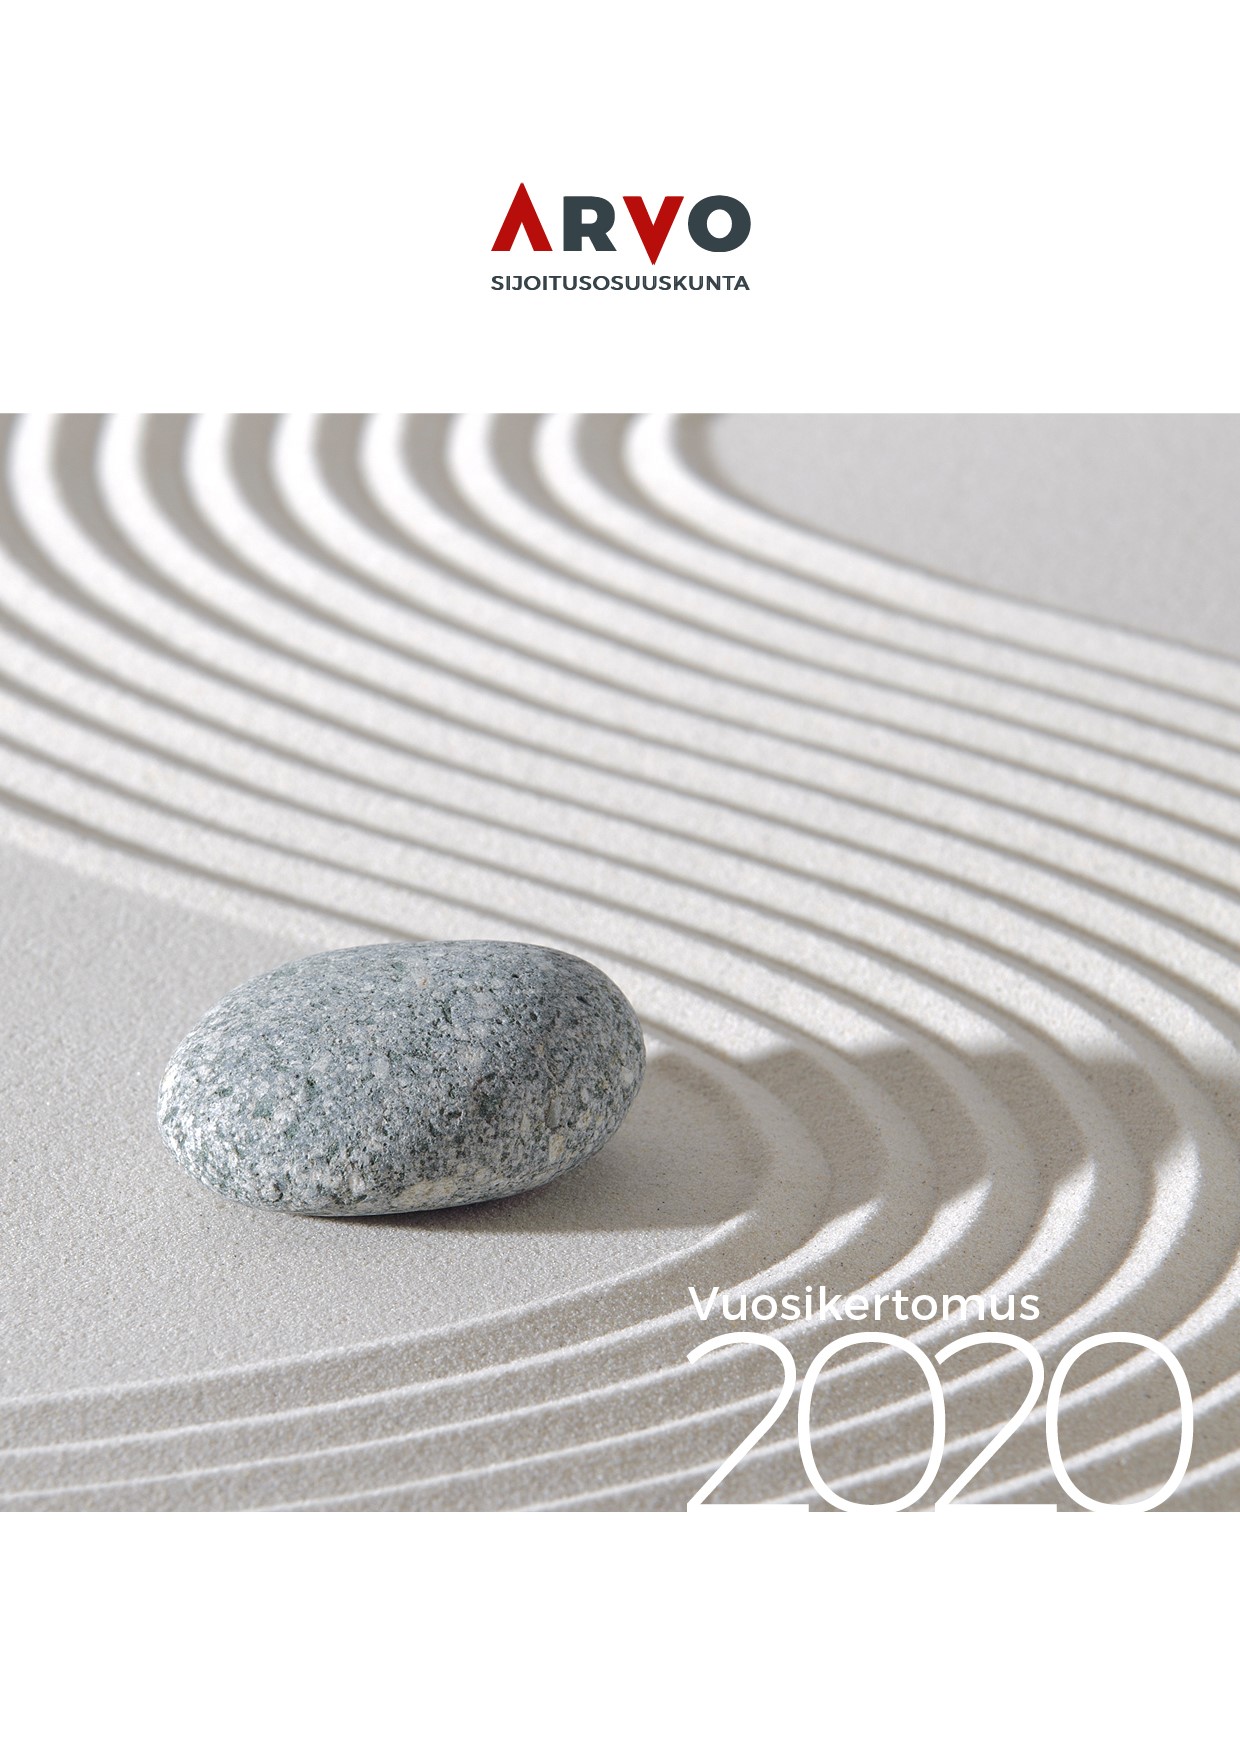 arvo vuosikertomus 2020